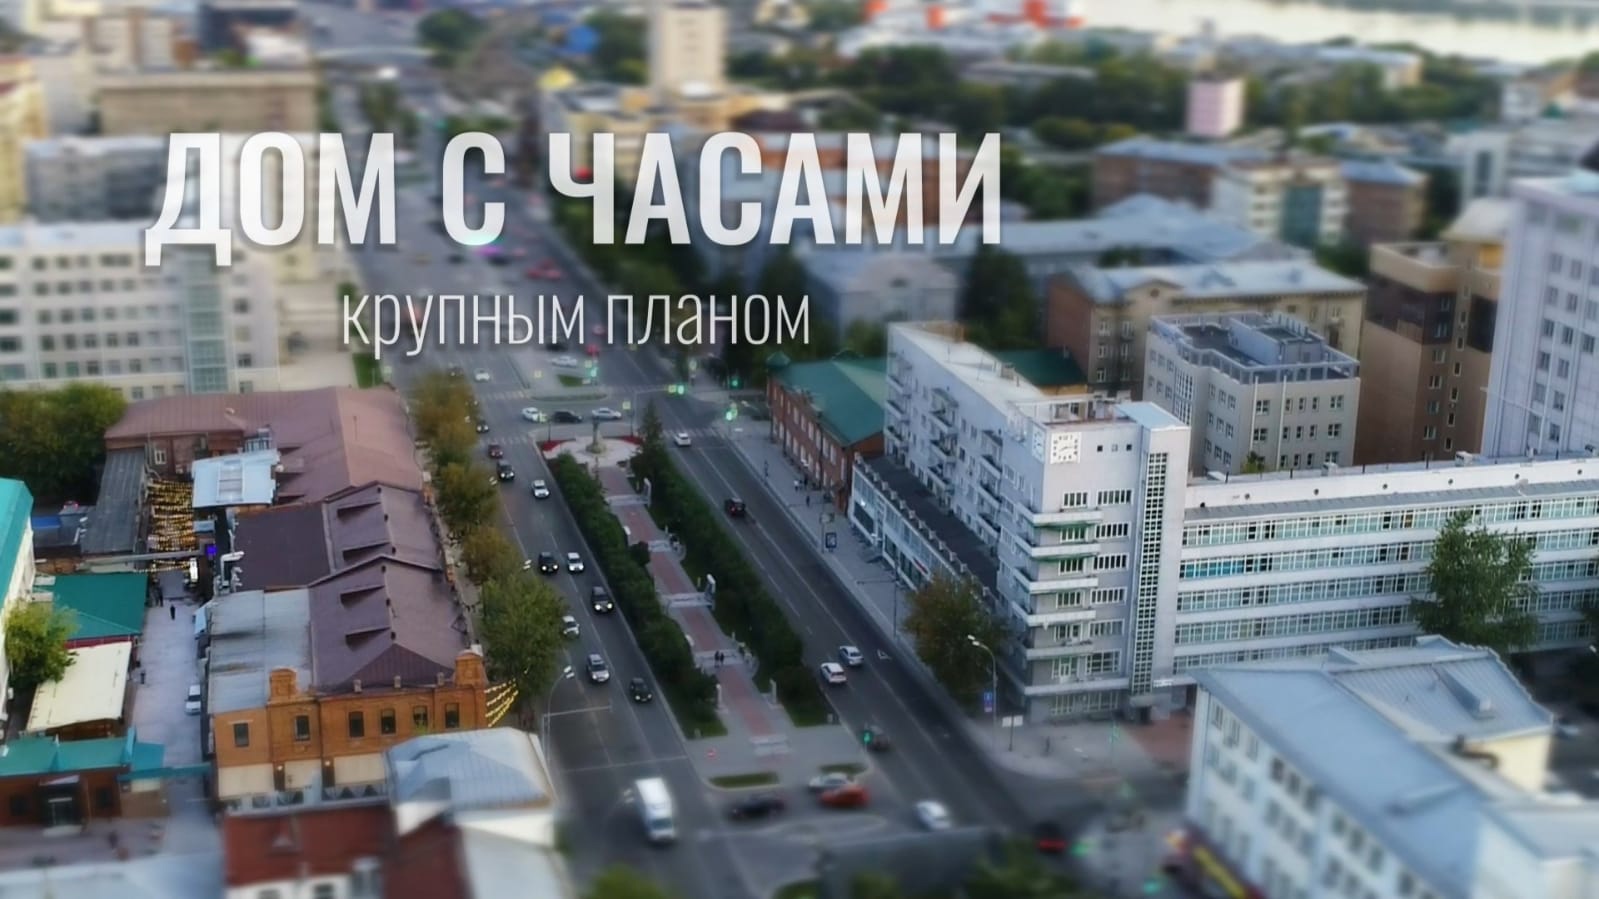 Музей Новосибирска выпустил новый фильм и аудиогид про знаменитый "дом с часами"